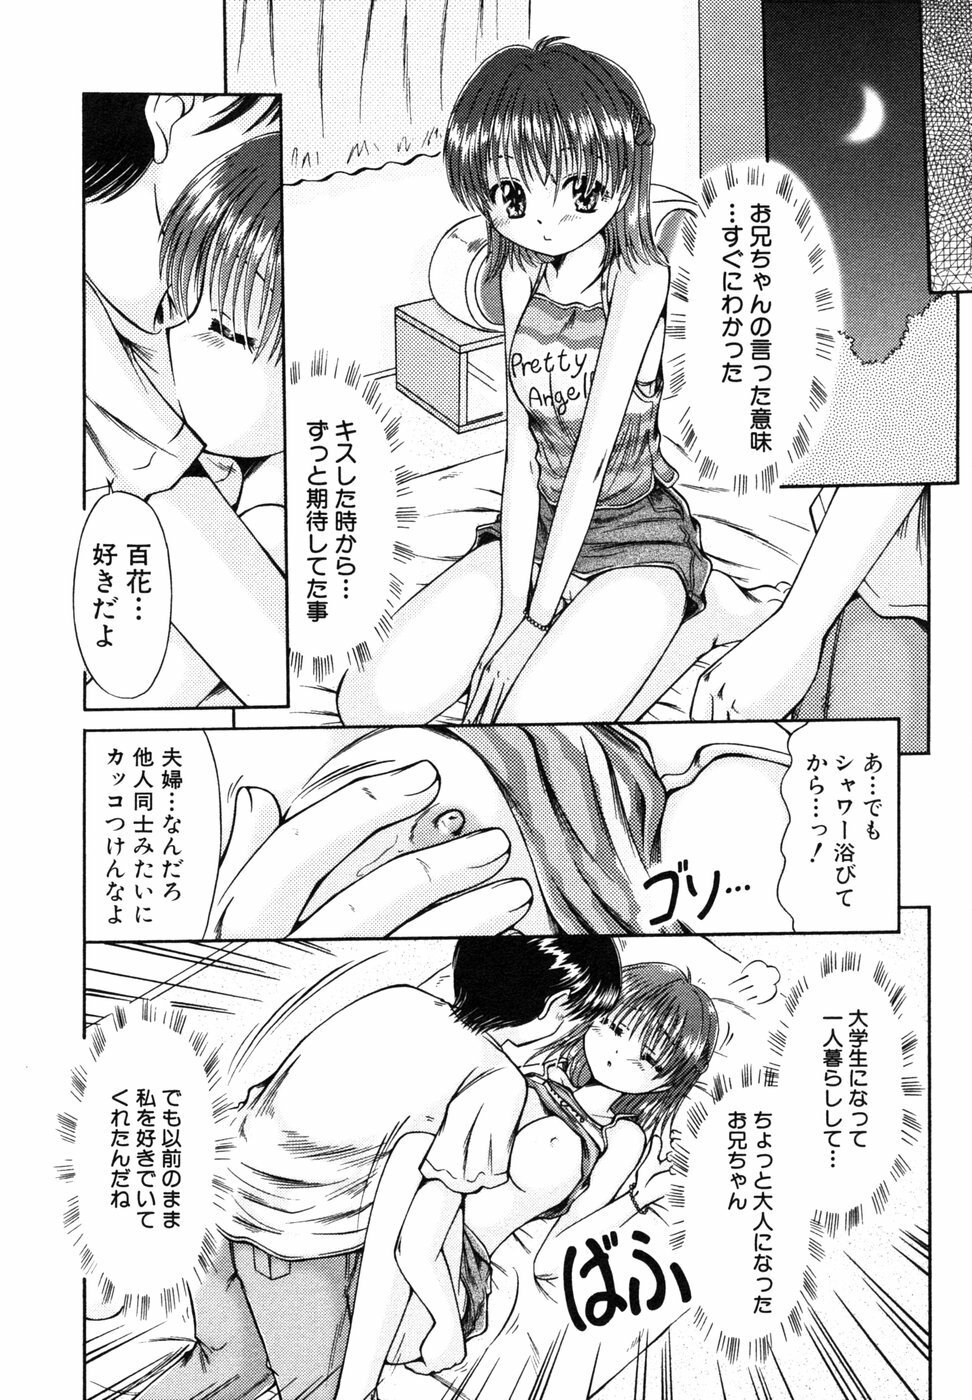 [Anthology] Himitsu no Tobira 5 Kinshin Ai Anthology (The Secret Door) page 25 full